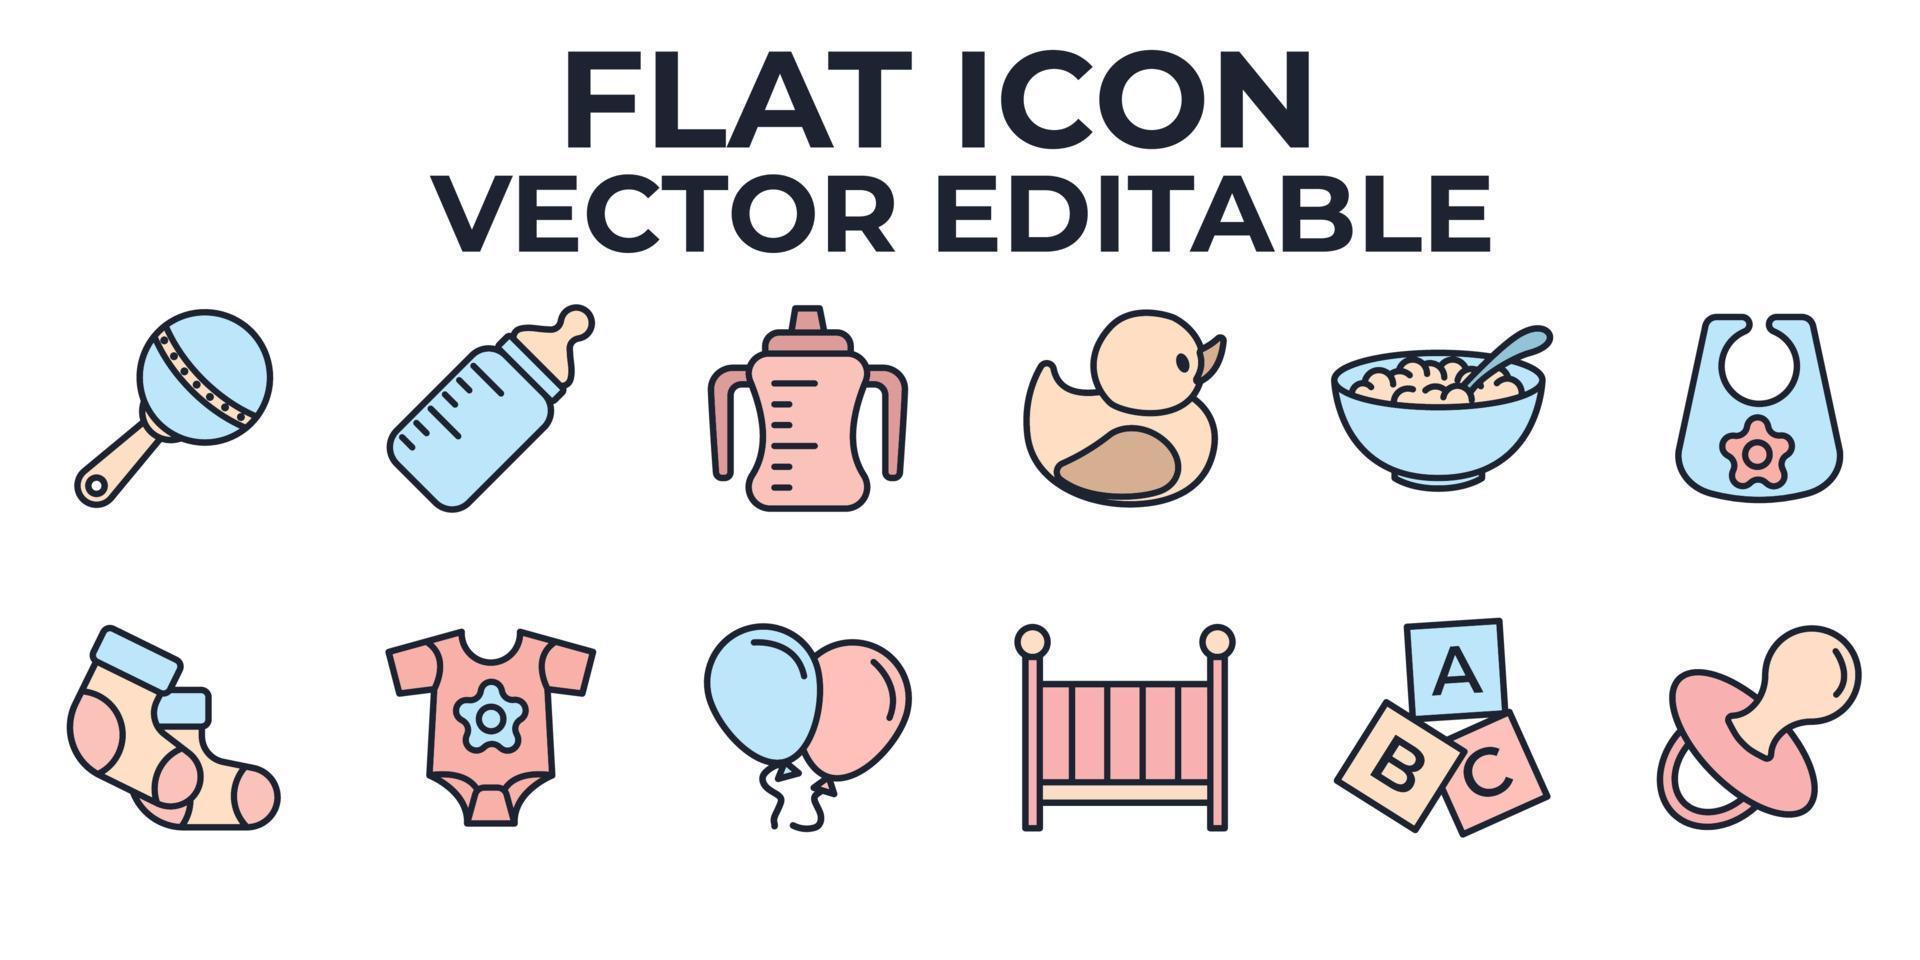 bébés, jouets pour bébés, alimentation et soins ensemble modèle de symbole d'icône pour illustration vectorielle de logo de collection de conception graphique et web vecteur